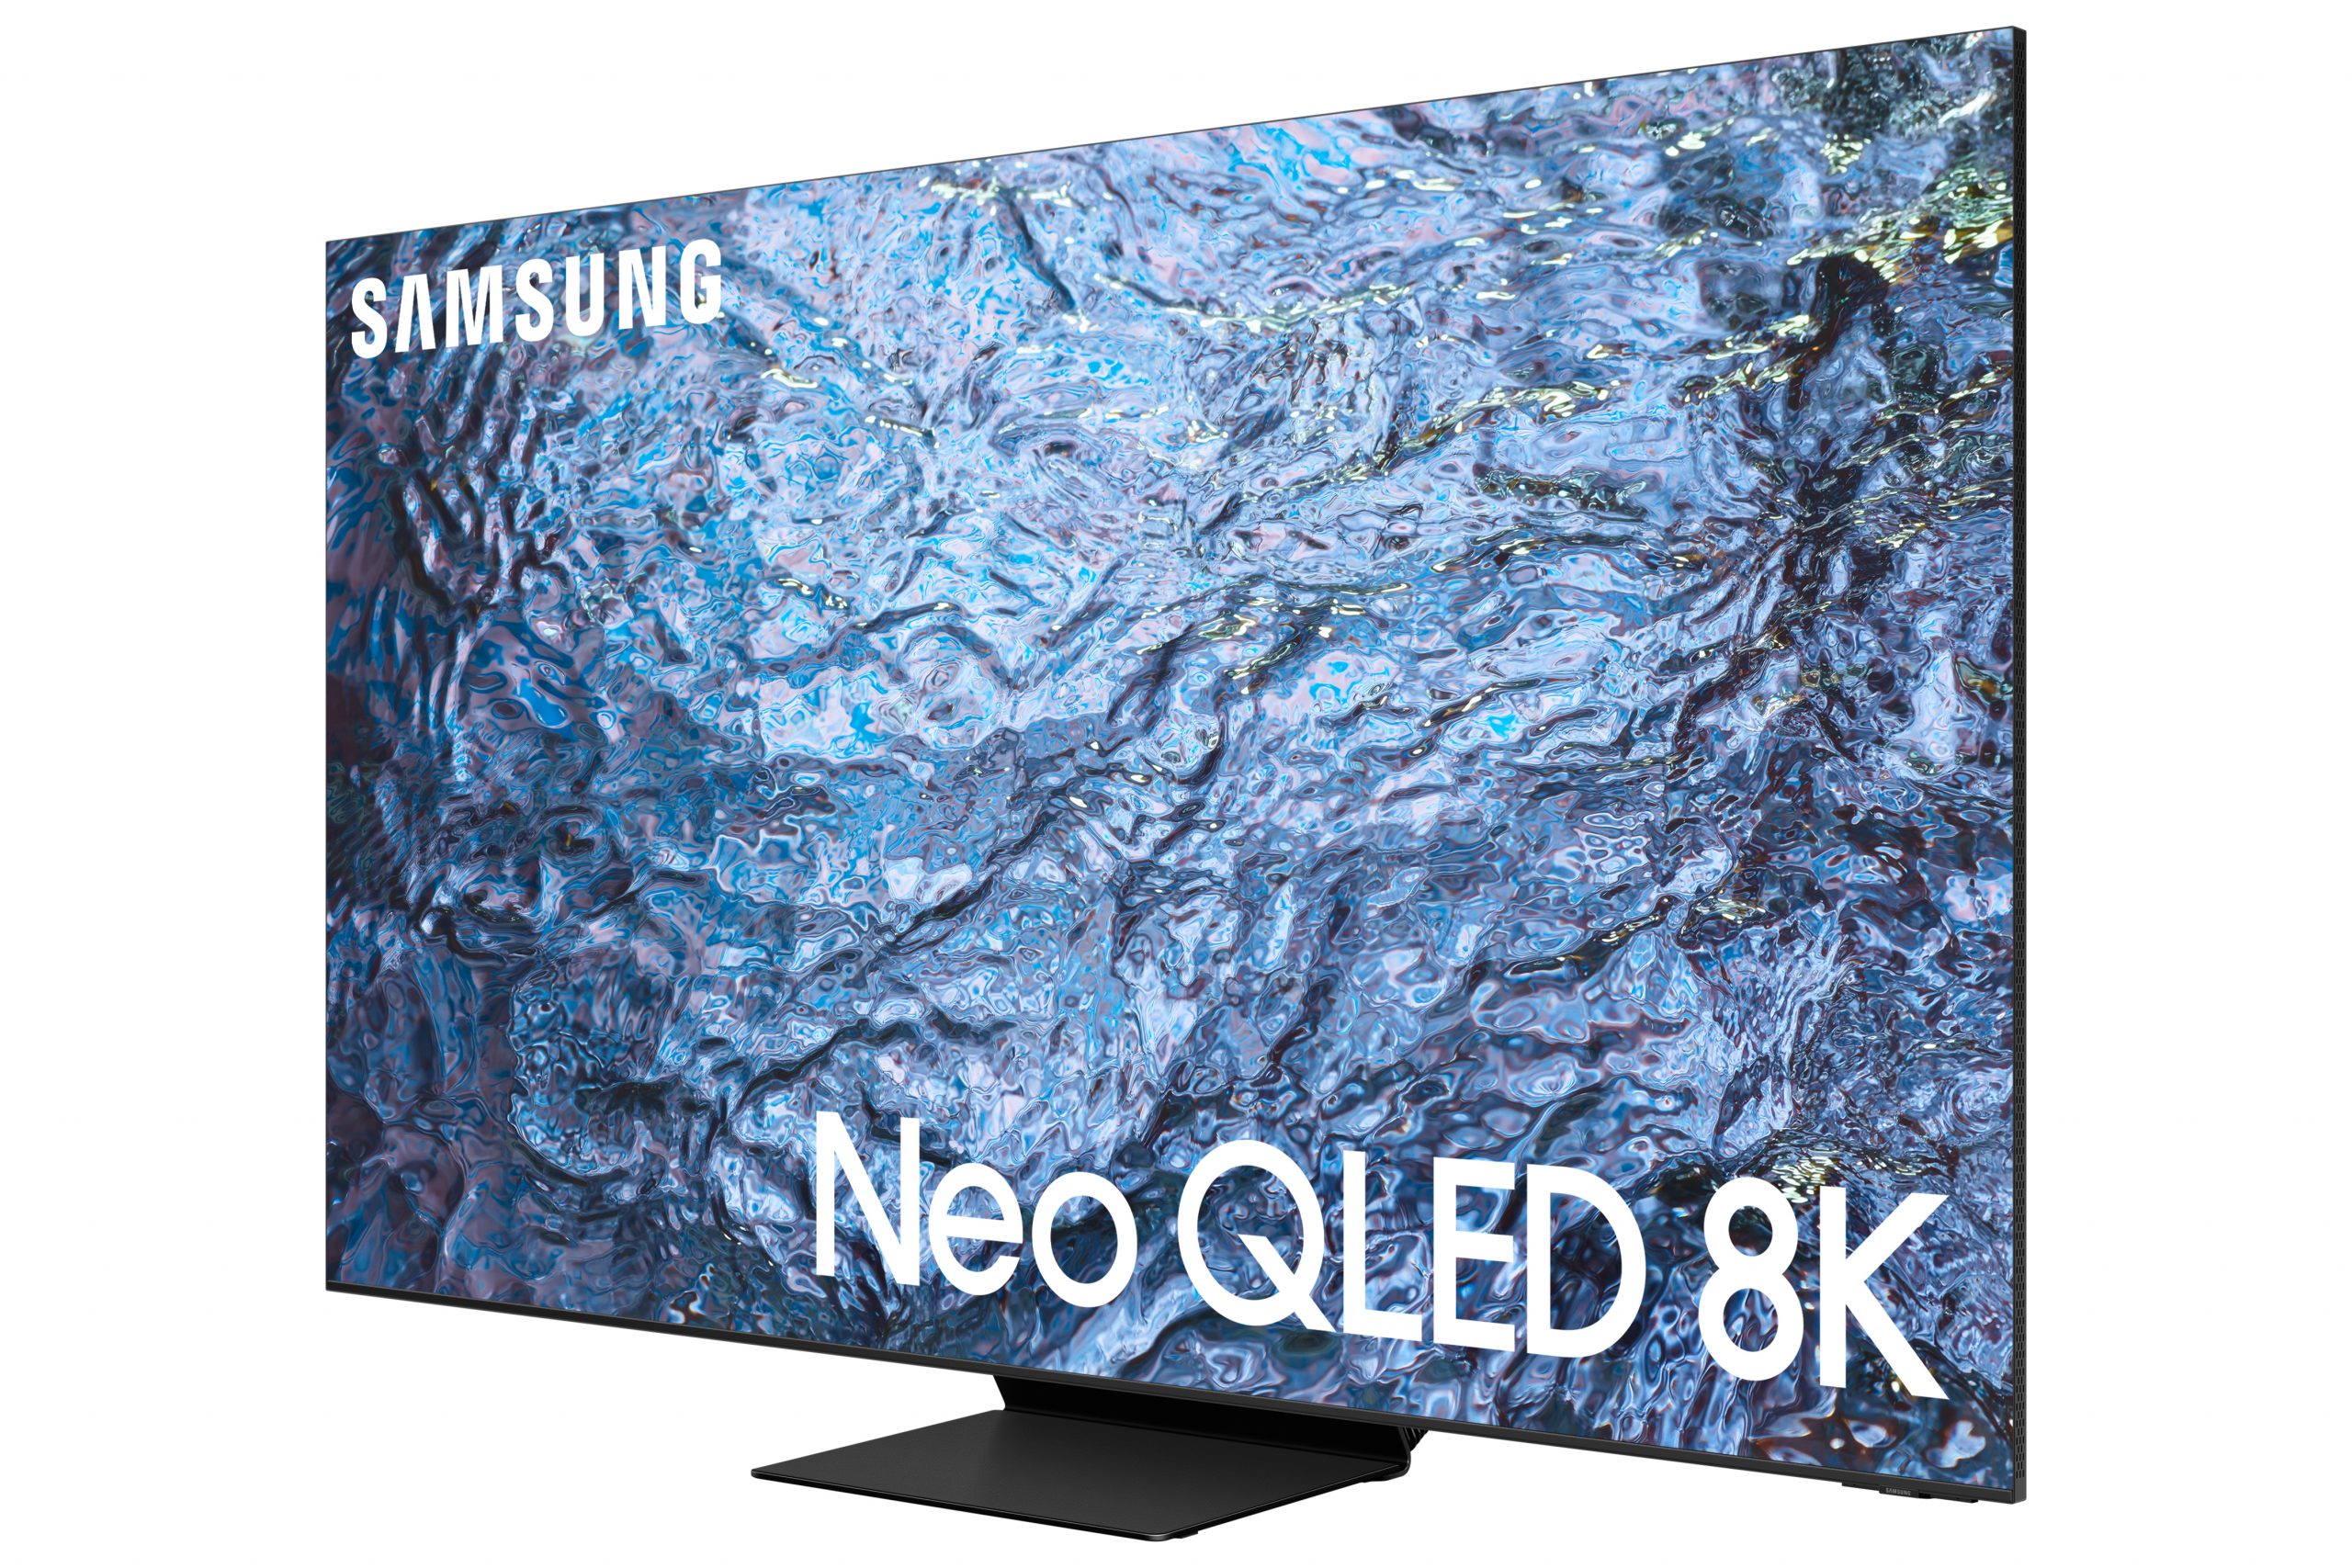 Samsung empieza a vender televisores Neo QLED 8K por 3500 dólares y más